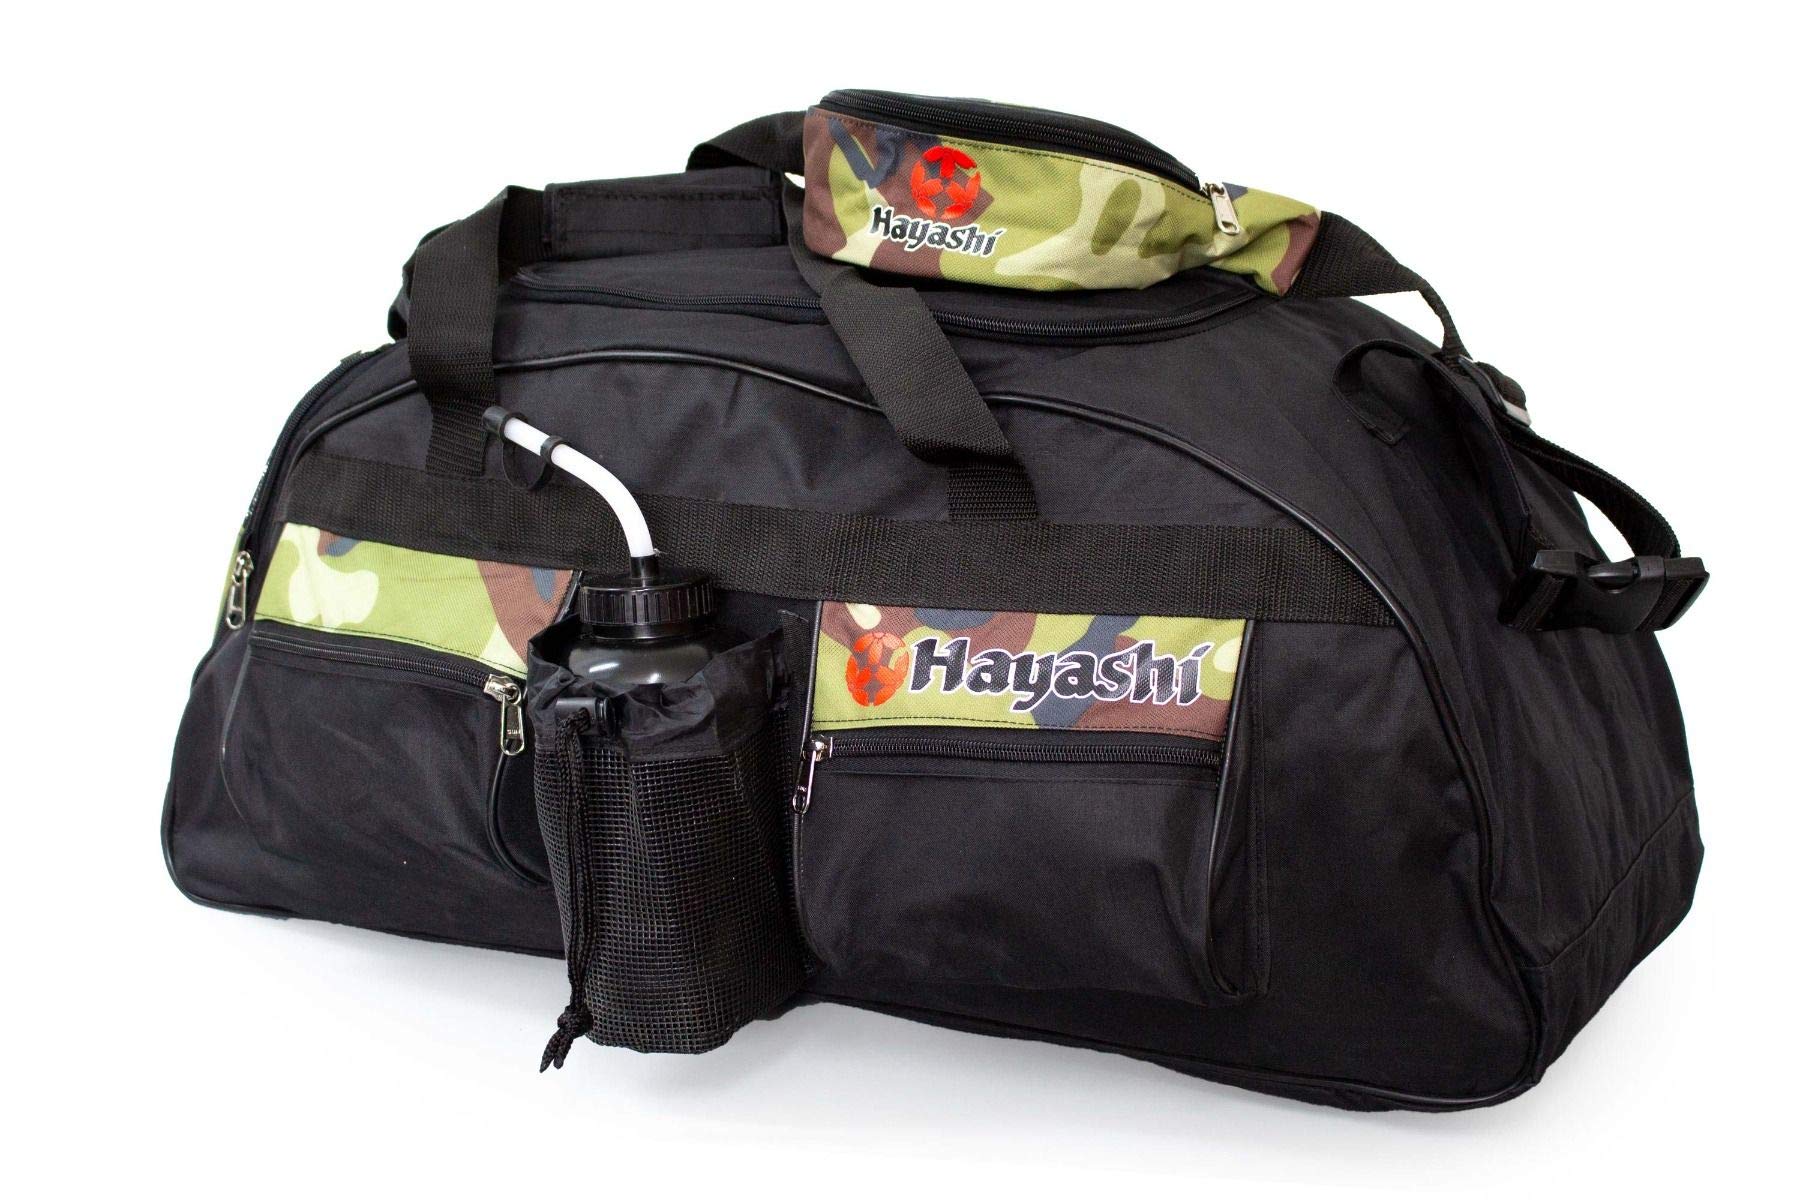 Hayashi 70 x 30 cm Sporttasche Camouflage Set + Bauchtasche Tasche Camo Kampfsport